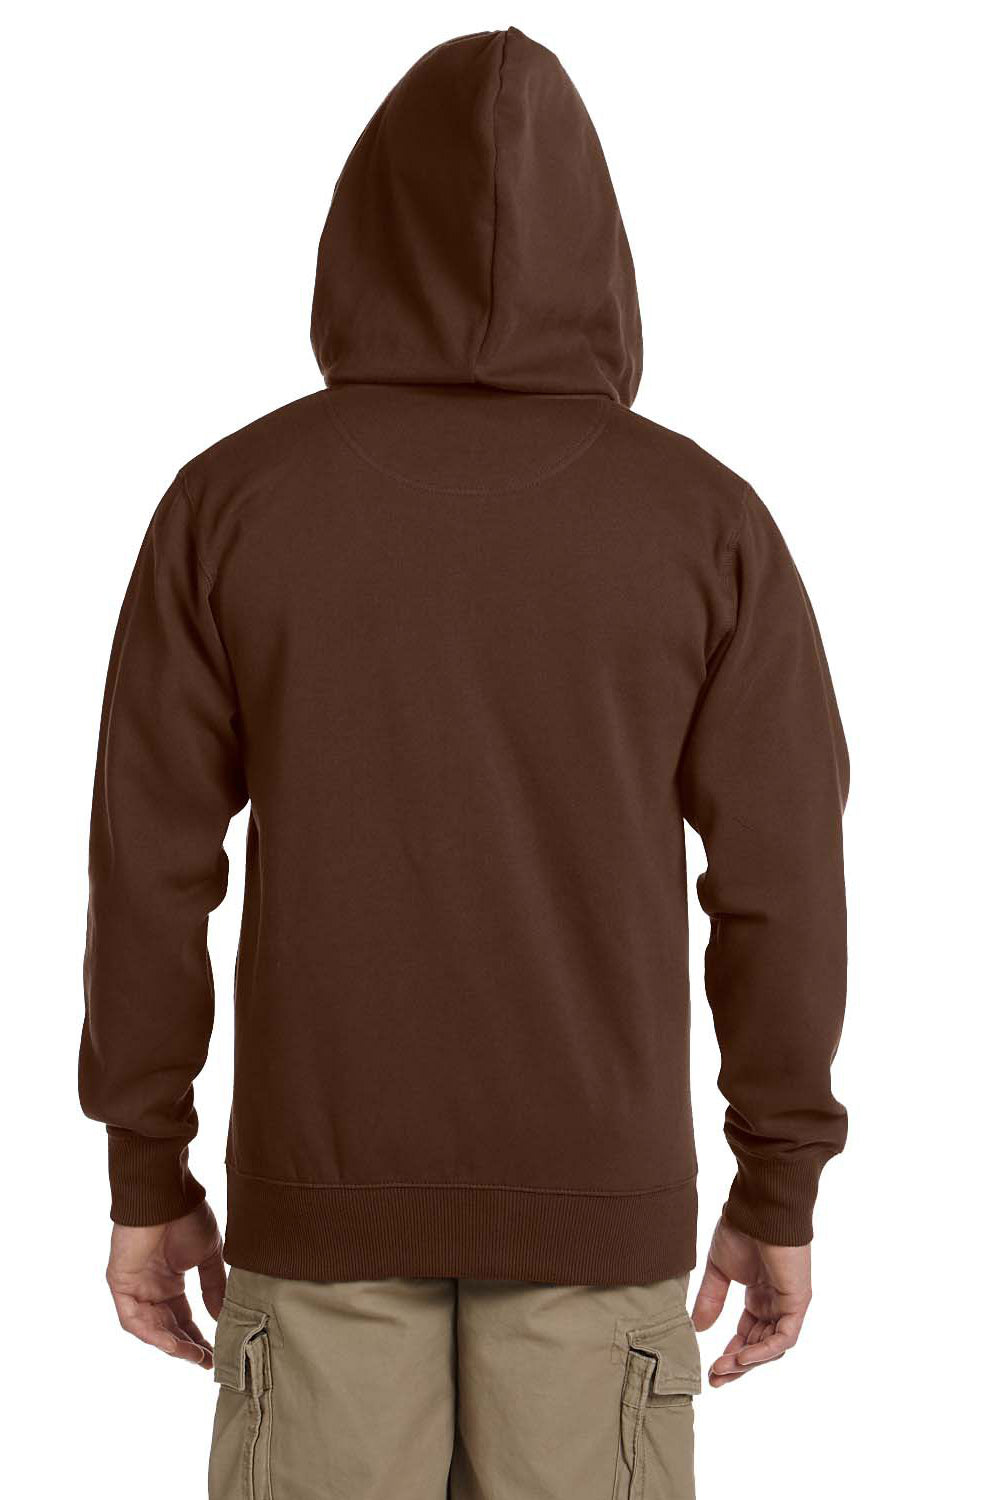 Econscious EC5650 Mens Full Zip Hooded Sweatshirt Hoodie Earth Brown Back